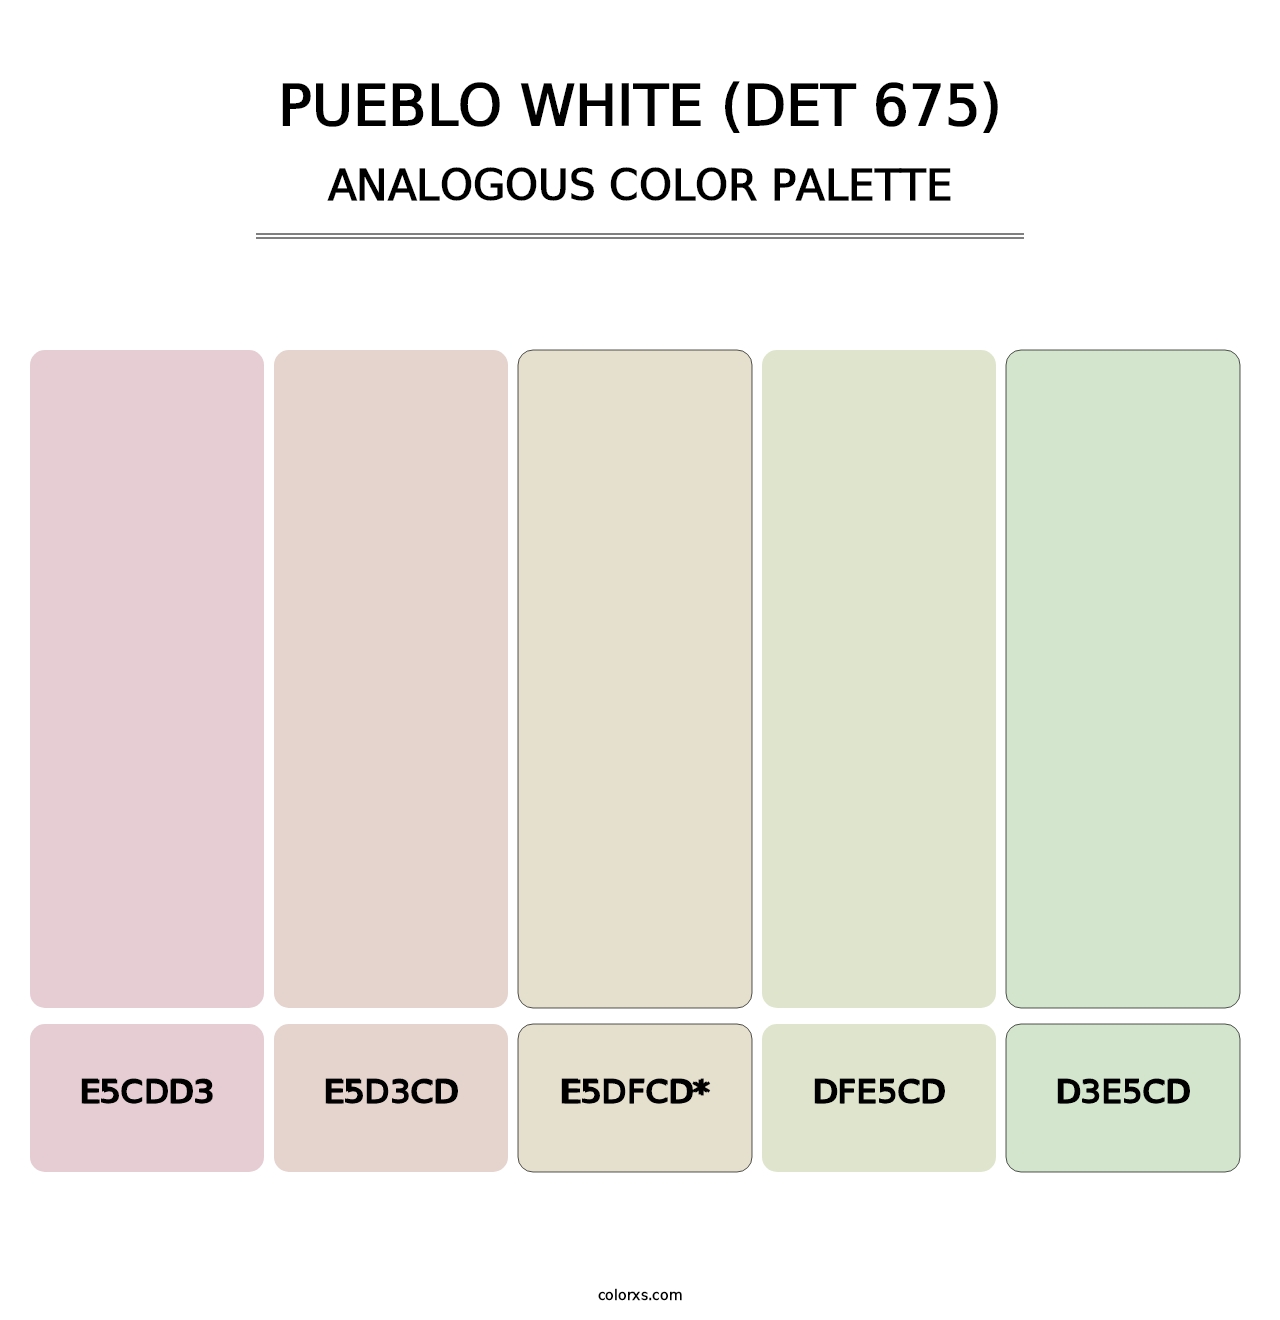 Pueblo White (DET 675) - Analogous Color Palette